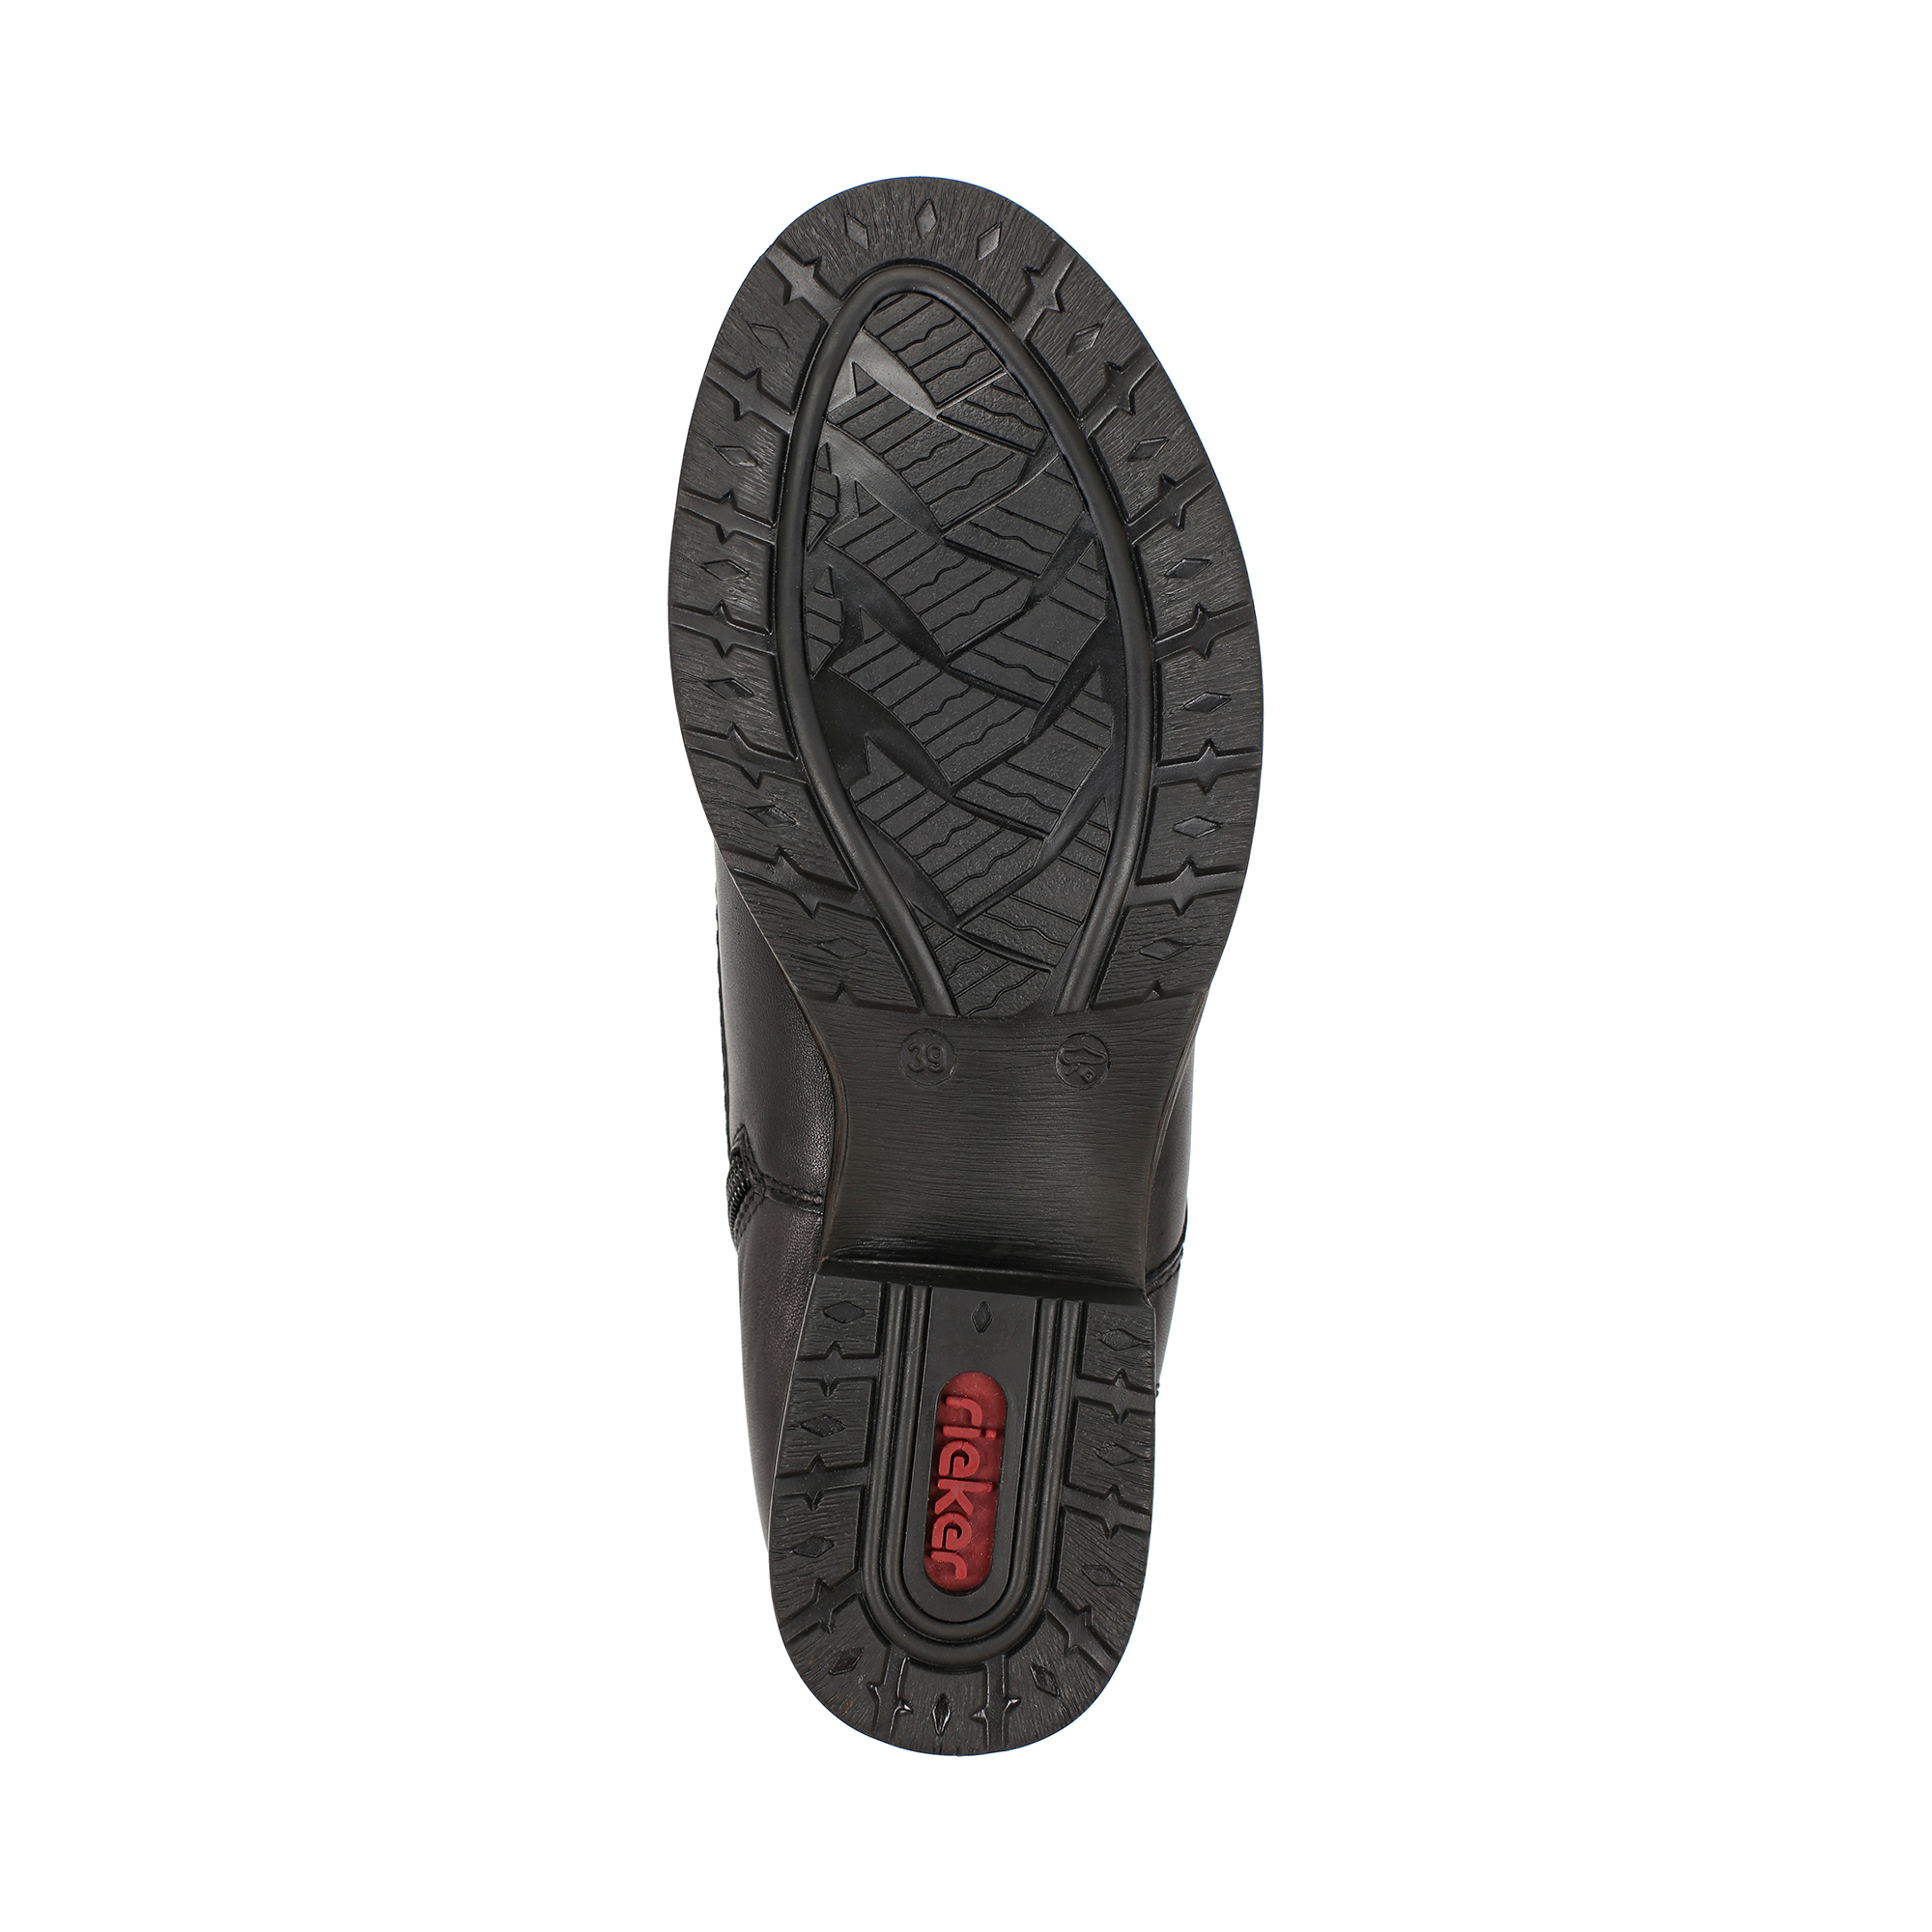 Ботинки Rieker Z9514-00, цвет черный, размер 36 - фото 4